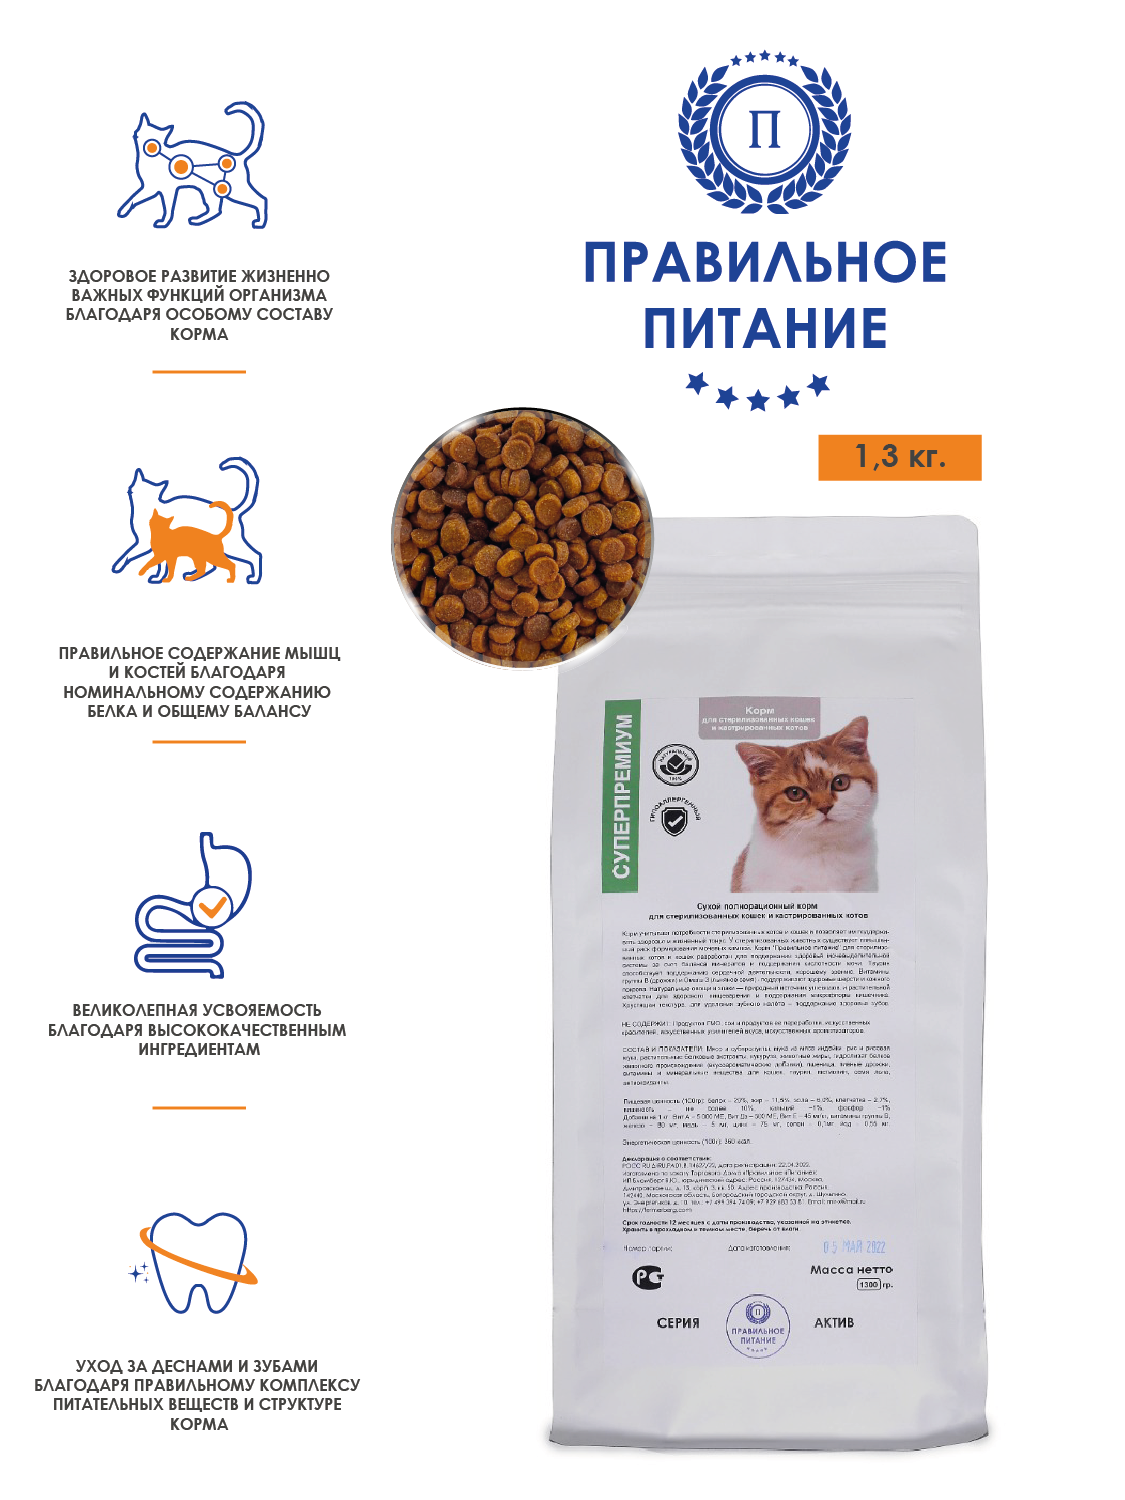 Сухой корм супер премиум - "Для стерилизованных кошек и кастрированных котов" , стоимость за упаковку - 1,3 кг.